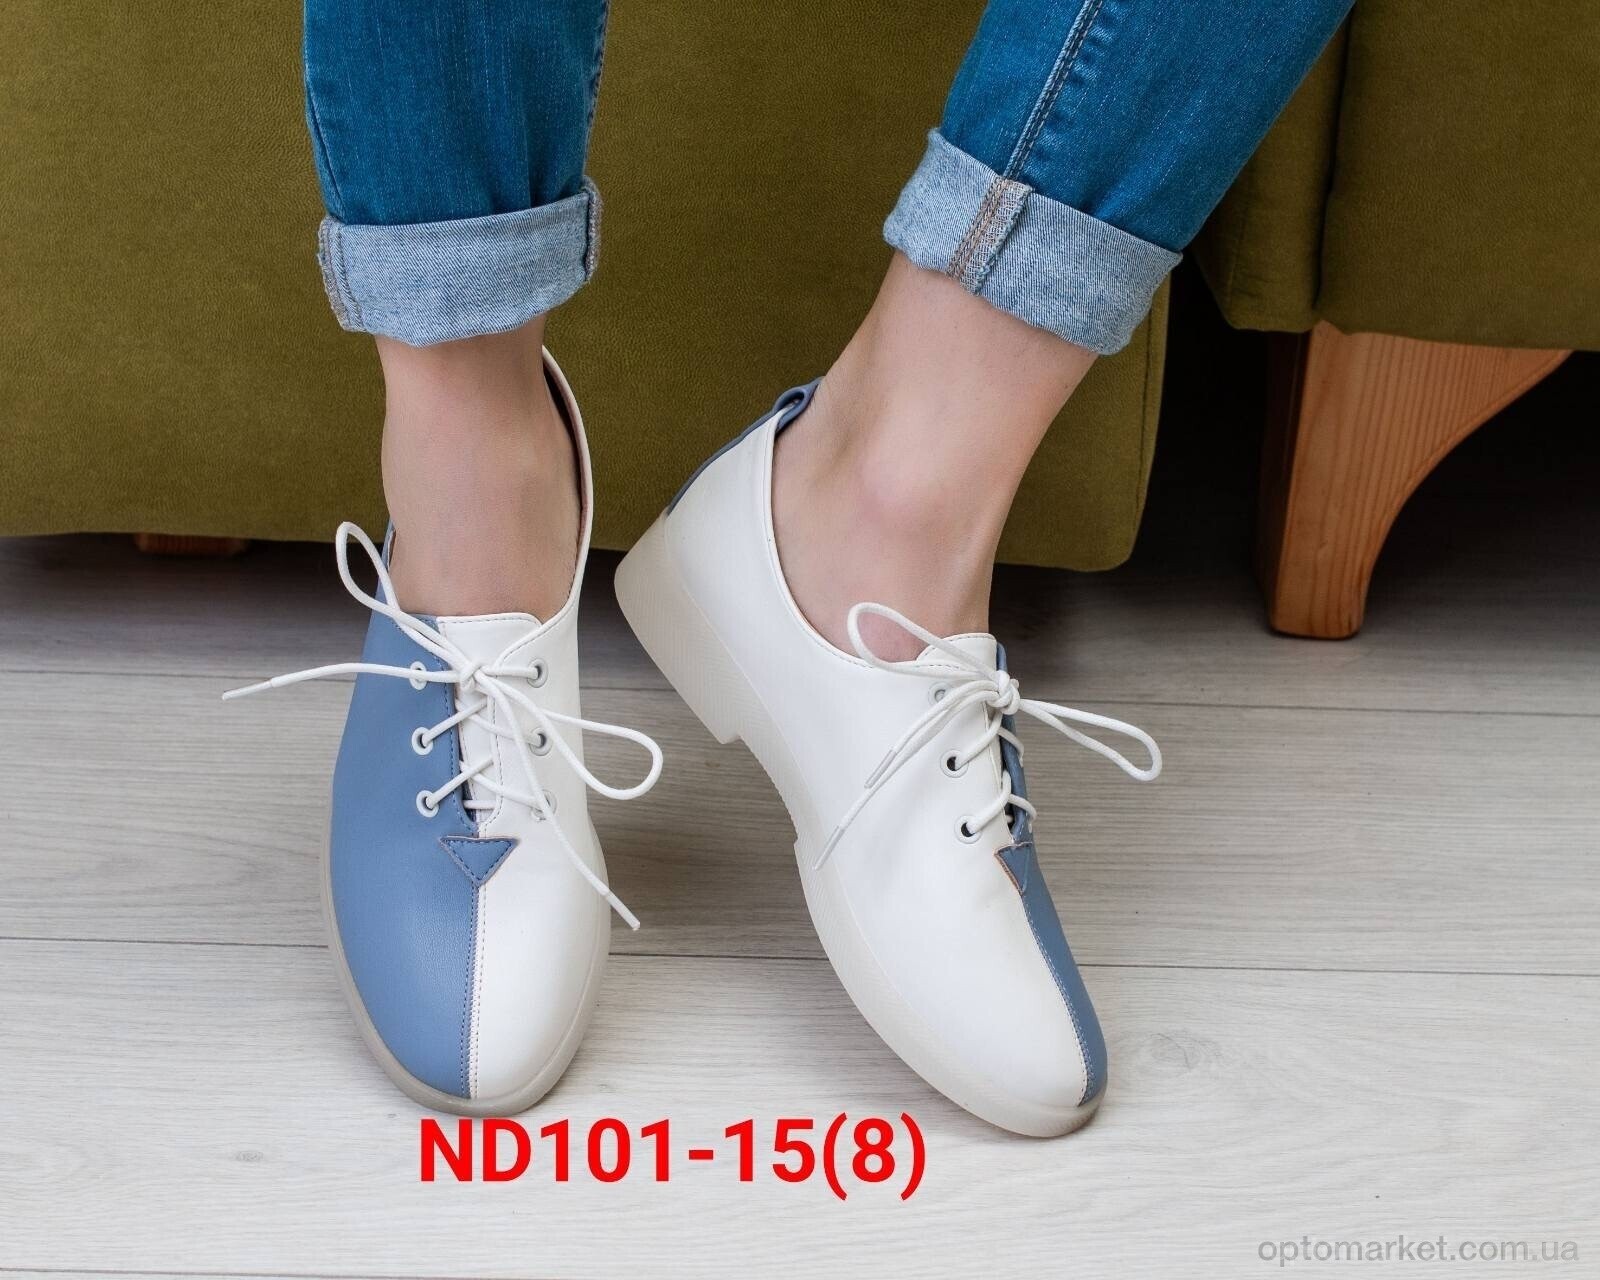 Купить Туфлі жіночі ND101-15 Teetspace блакитний, фото 2